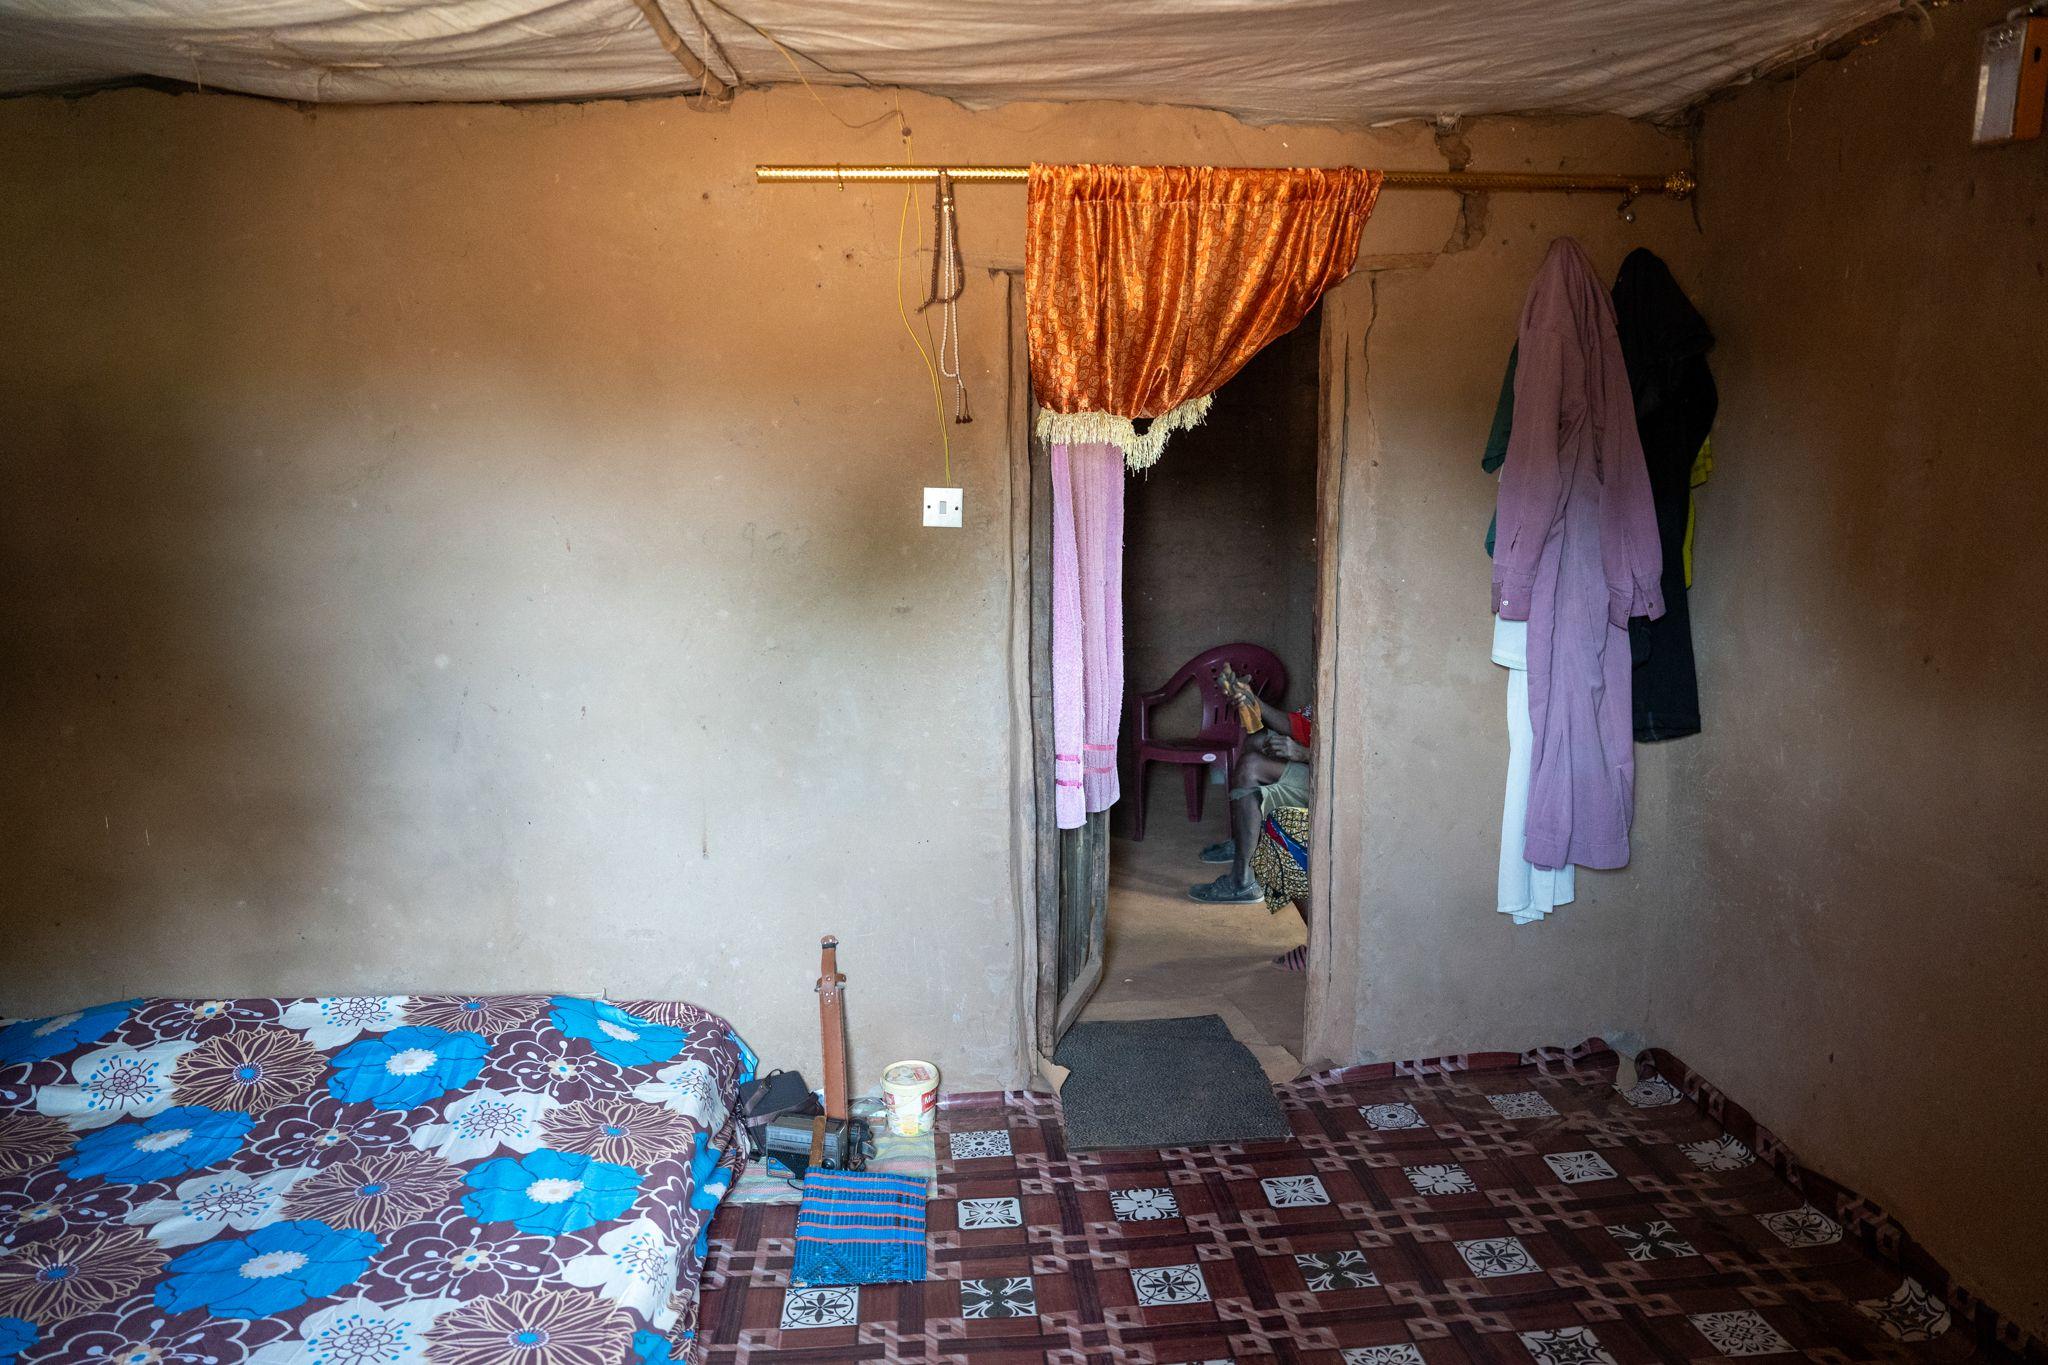 Dormitorul lui Fatou și lui Boto unde a intrat glonțul rătăcit de peste graniță. Foto: Andrei Popoviciu